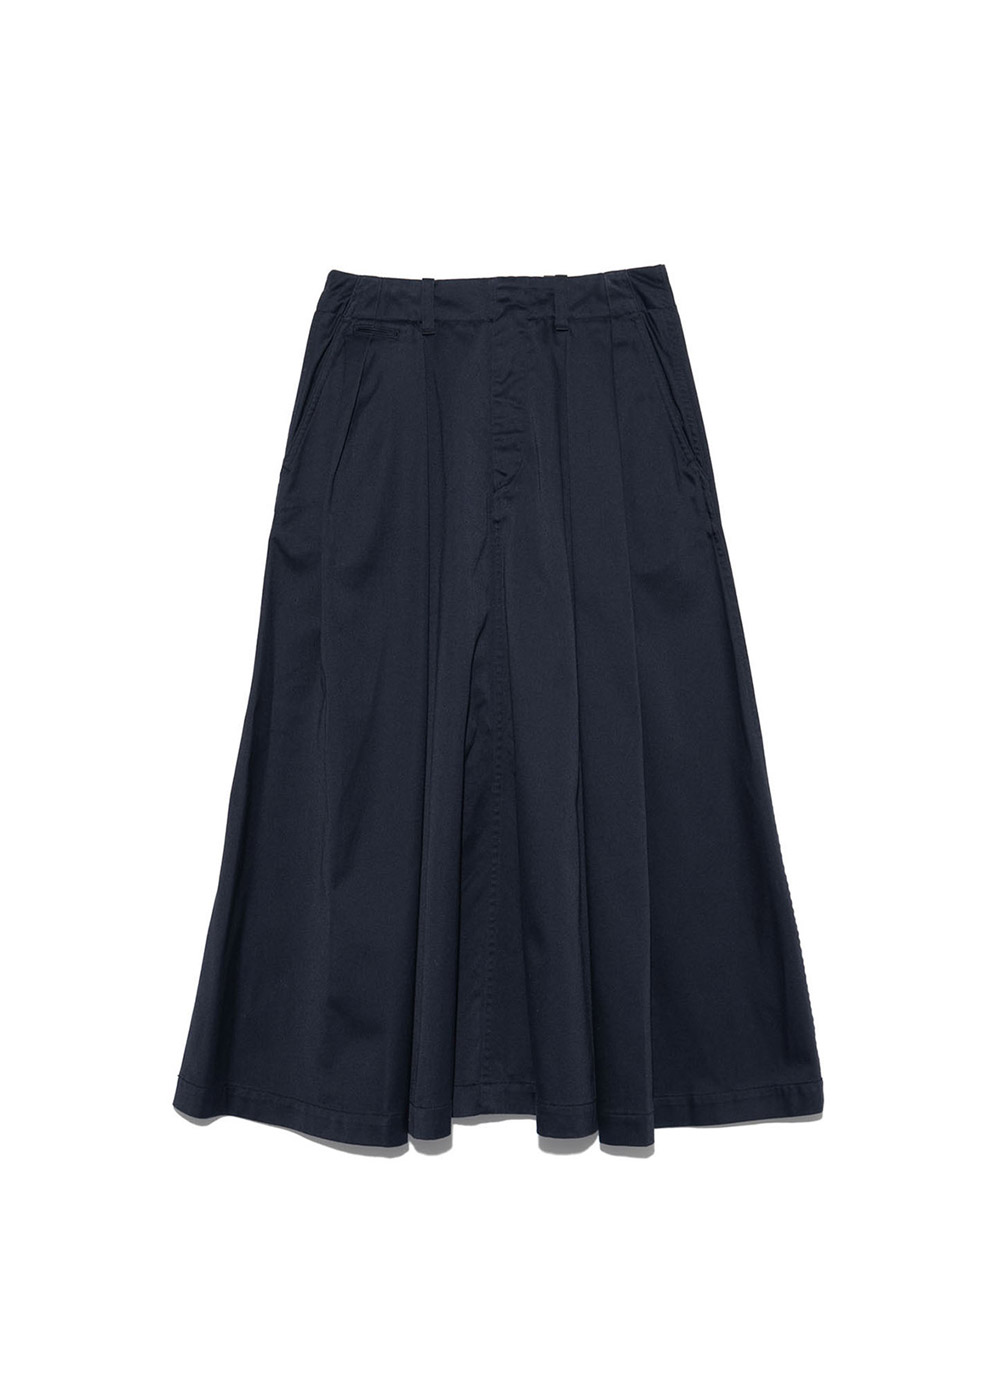 Chino Skirt (Navy)